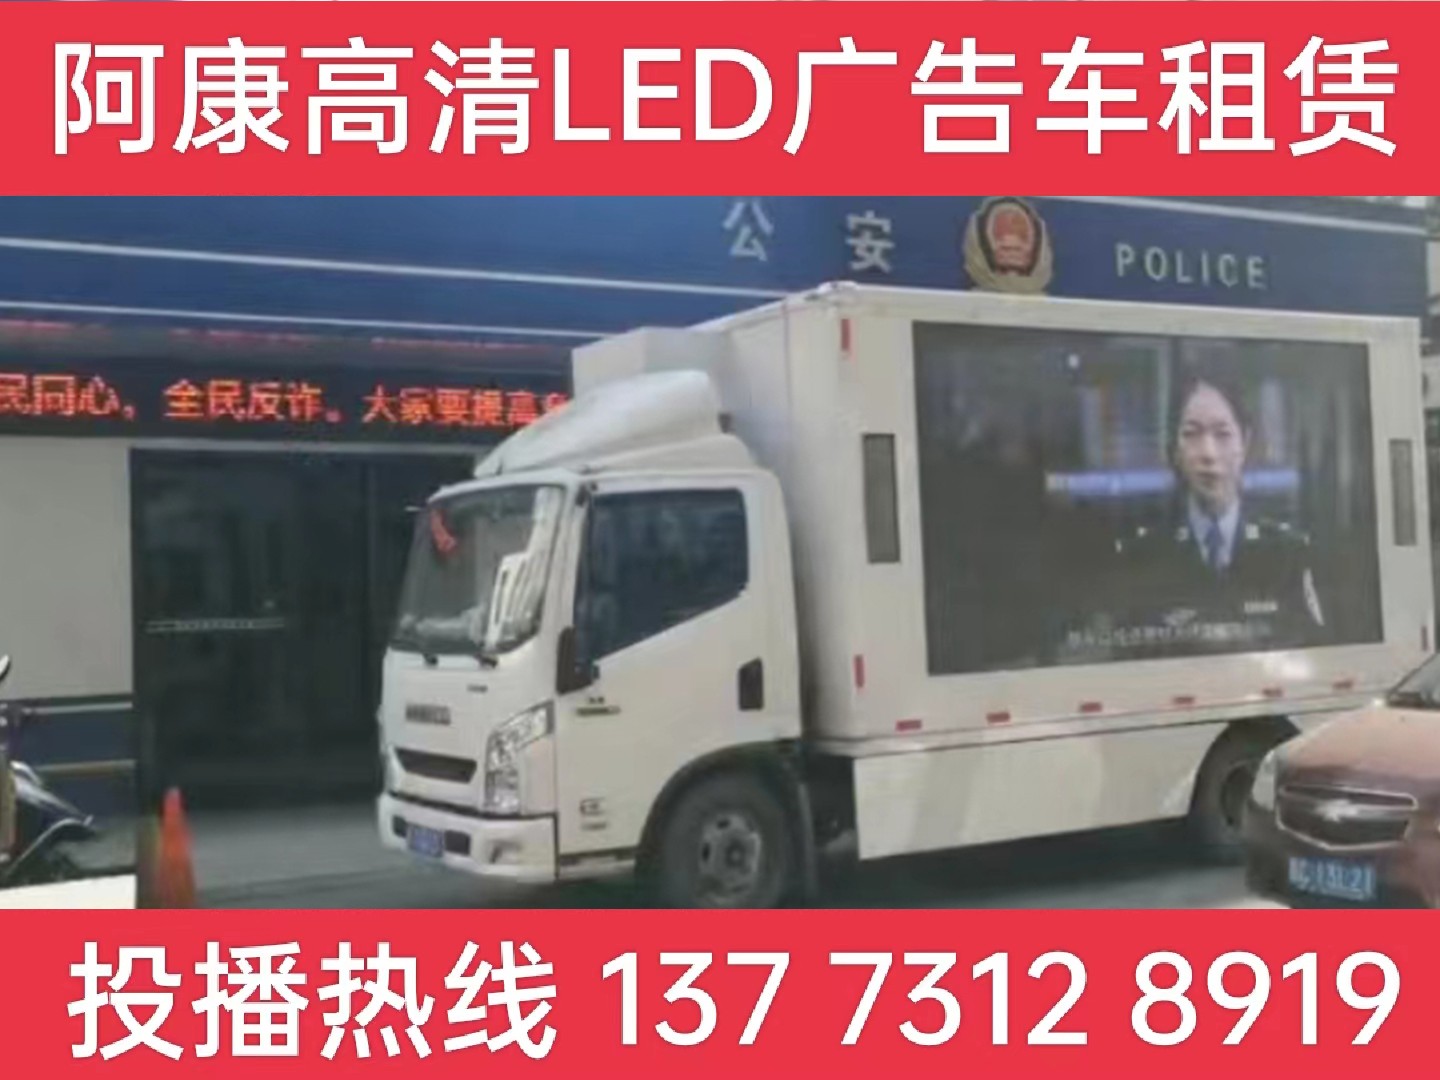 沭阳县LED广告车租赁-反诈宣传